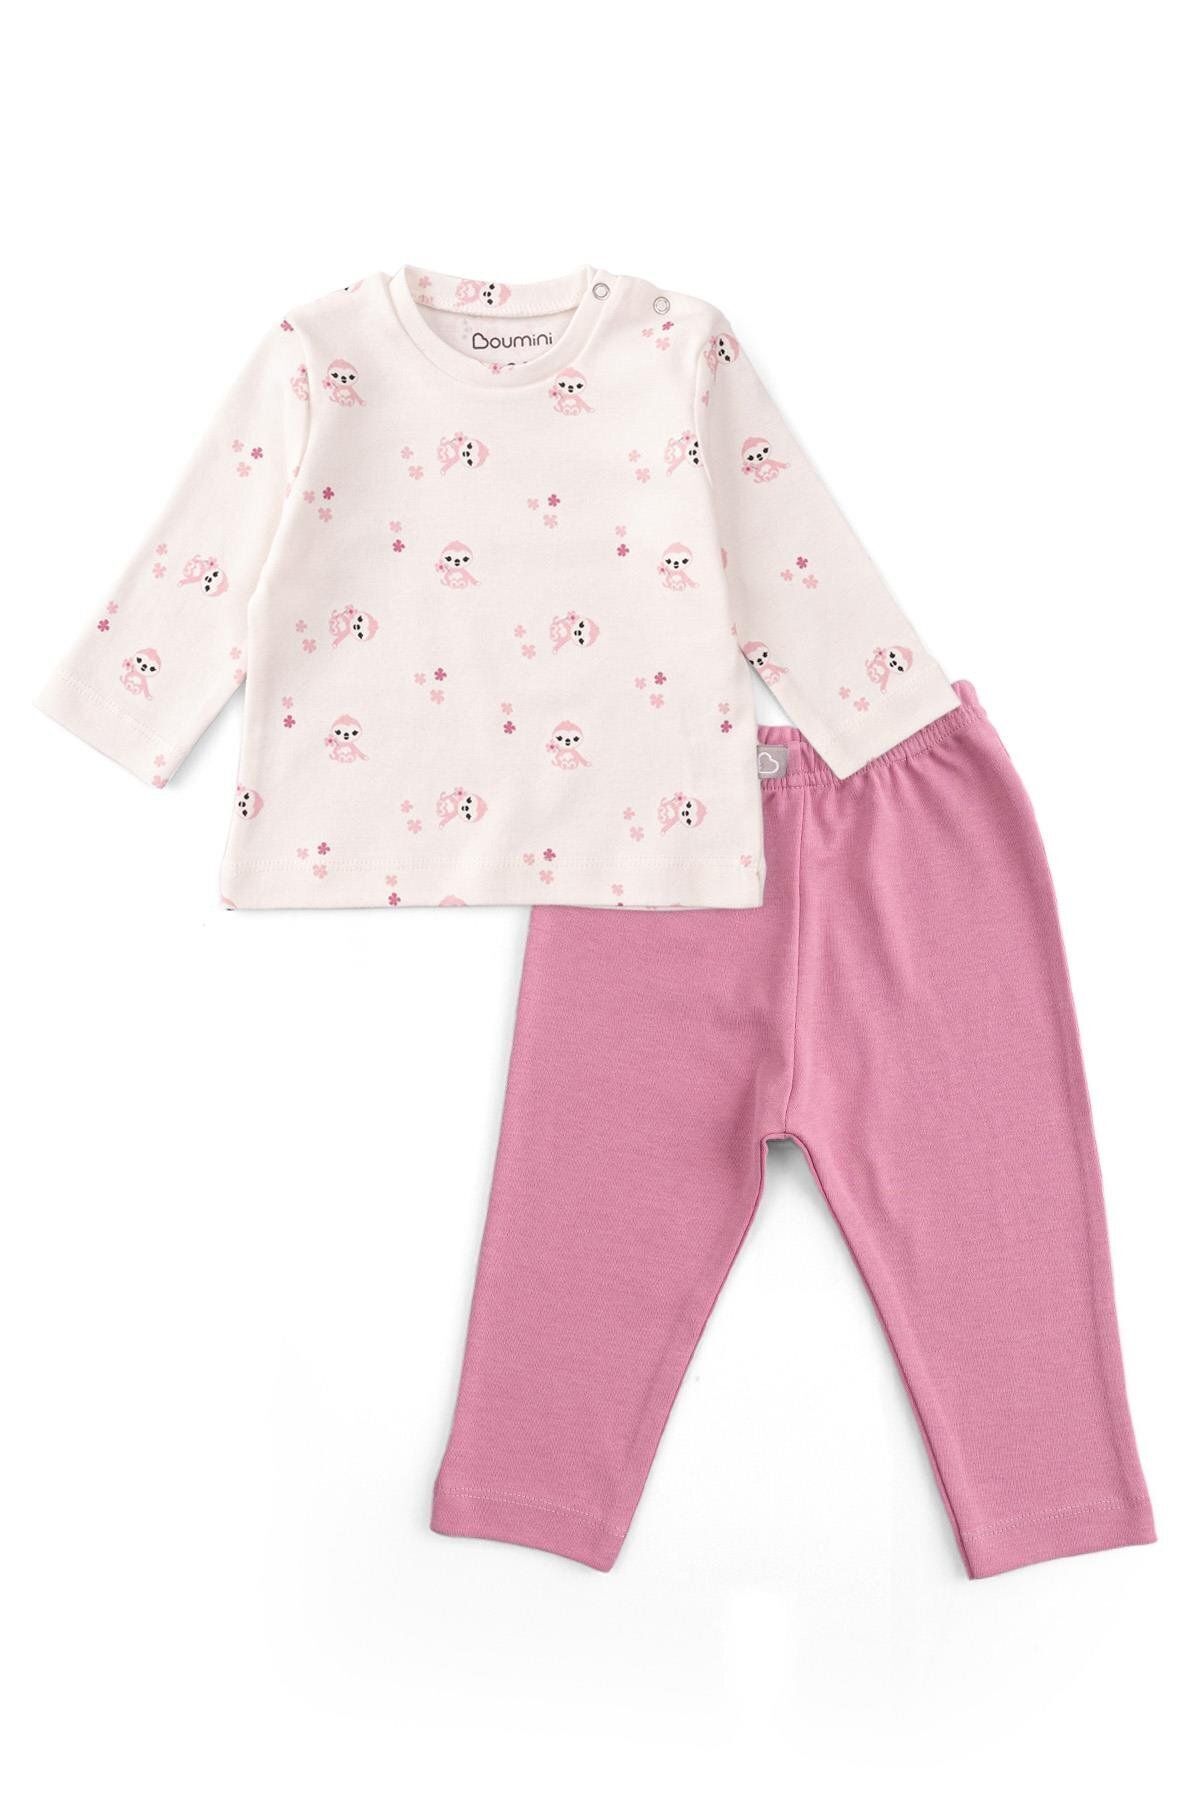 Boumini Bebek Ve Çocuk Pijama Takımı Pembe Miskin